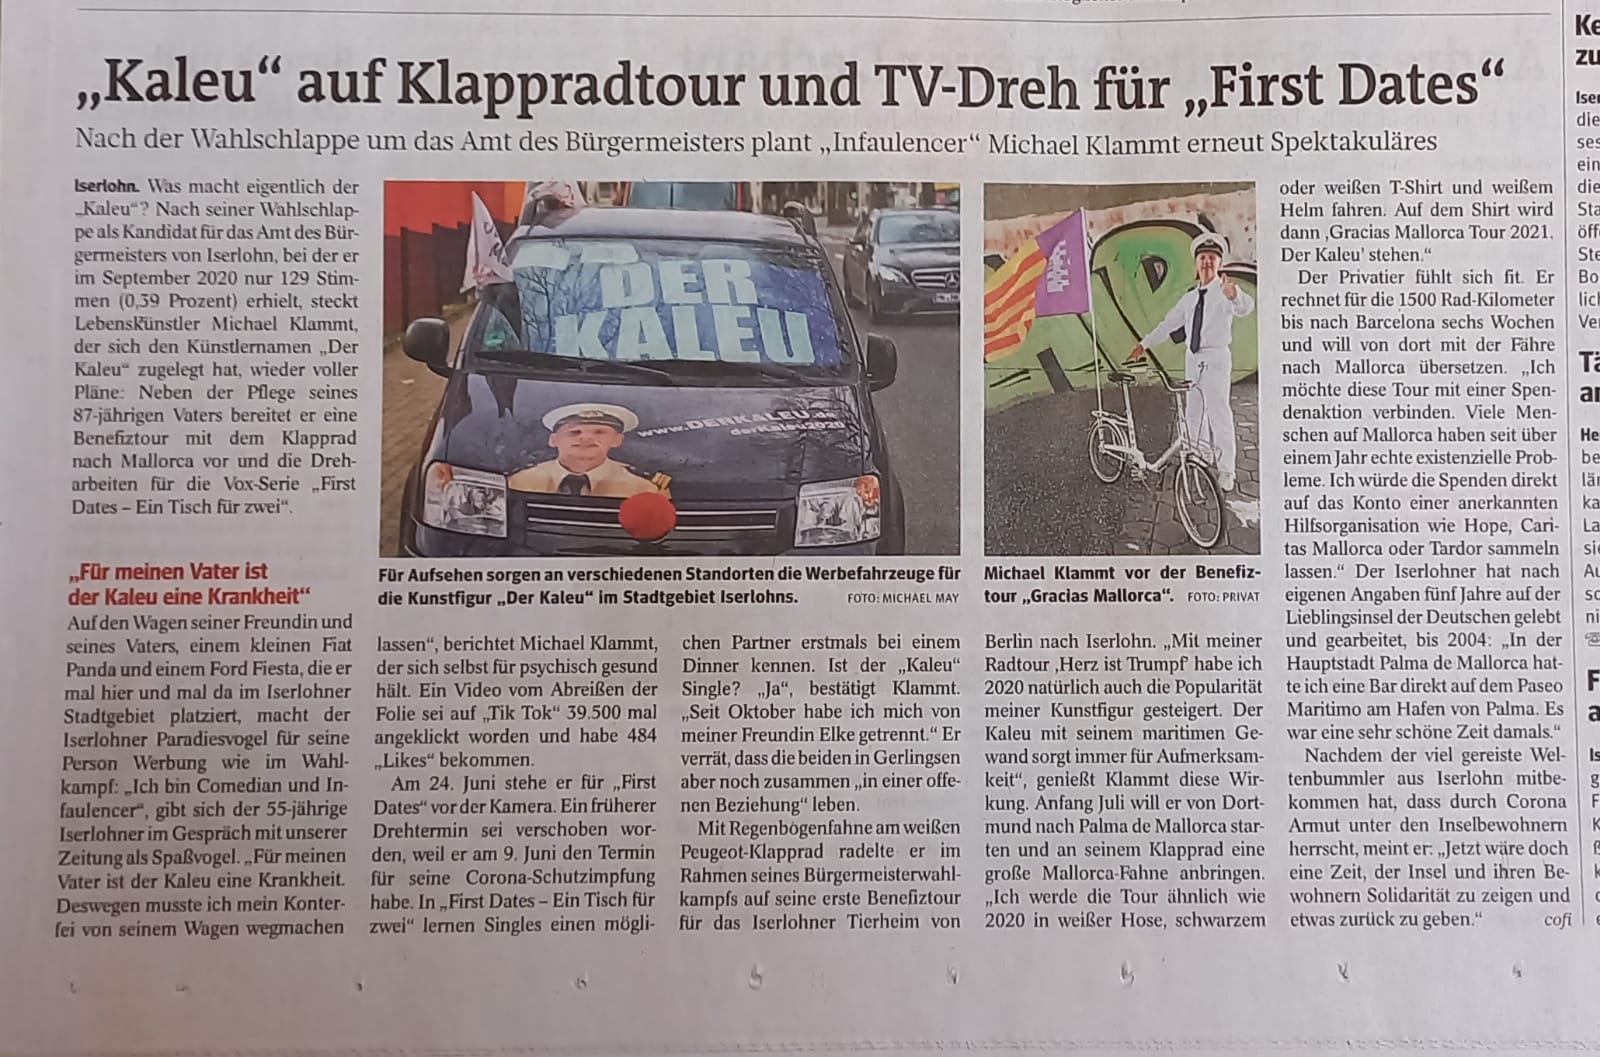 Kaleu auf Klappradtour und Tv-Dreh fuer First Dates